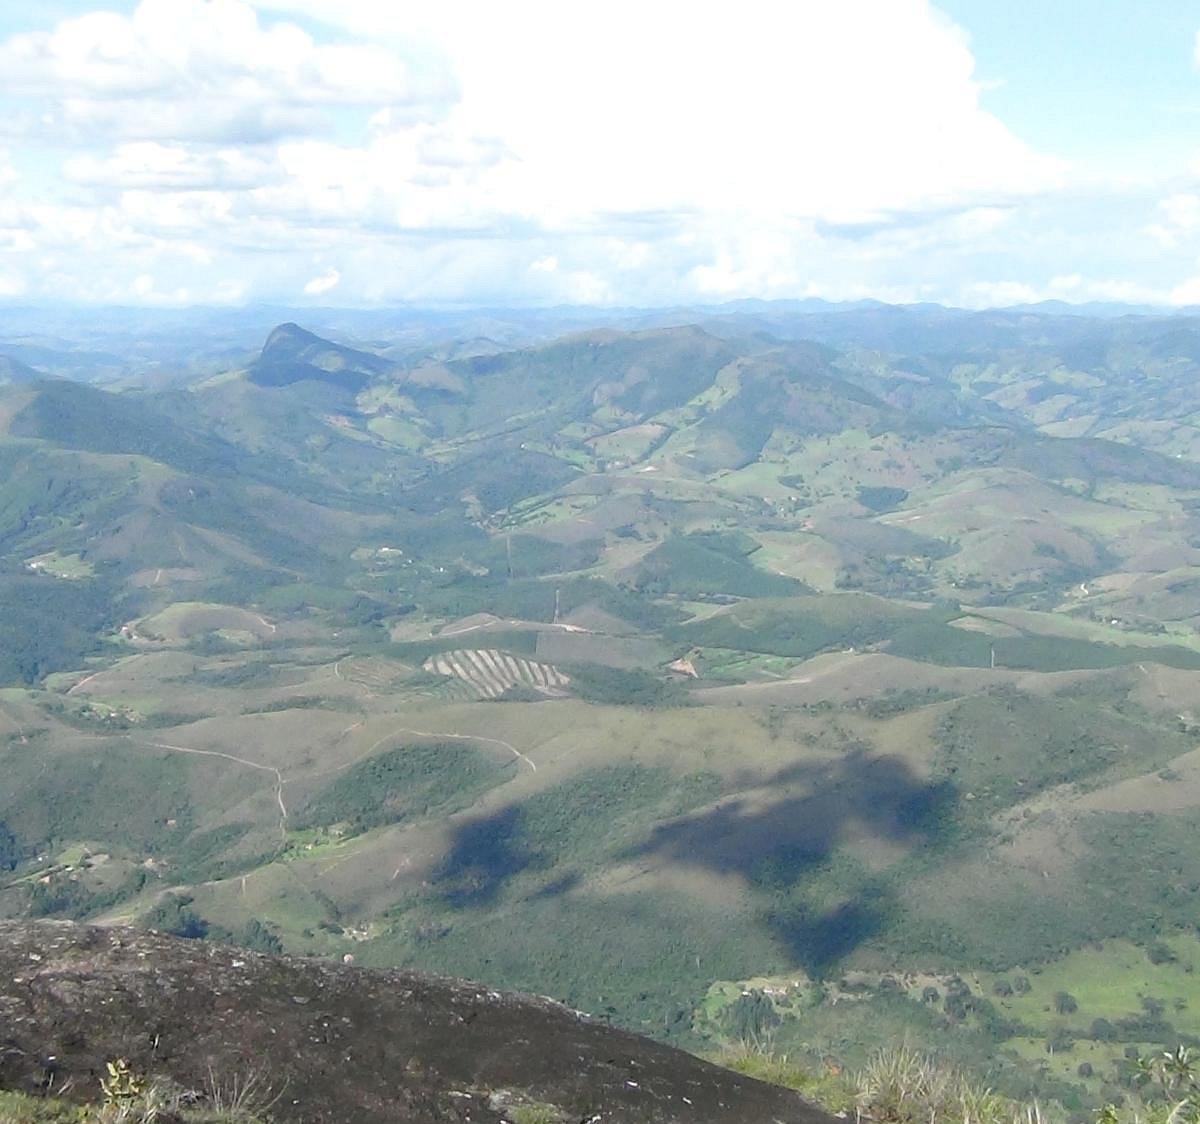 Pico do Pião - O que saber antes de ir (ATUALIZADO 2023)